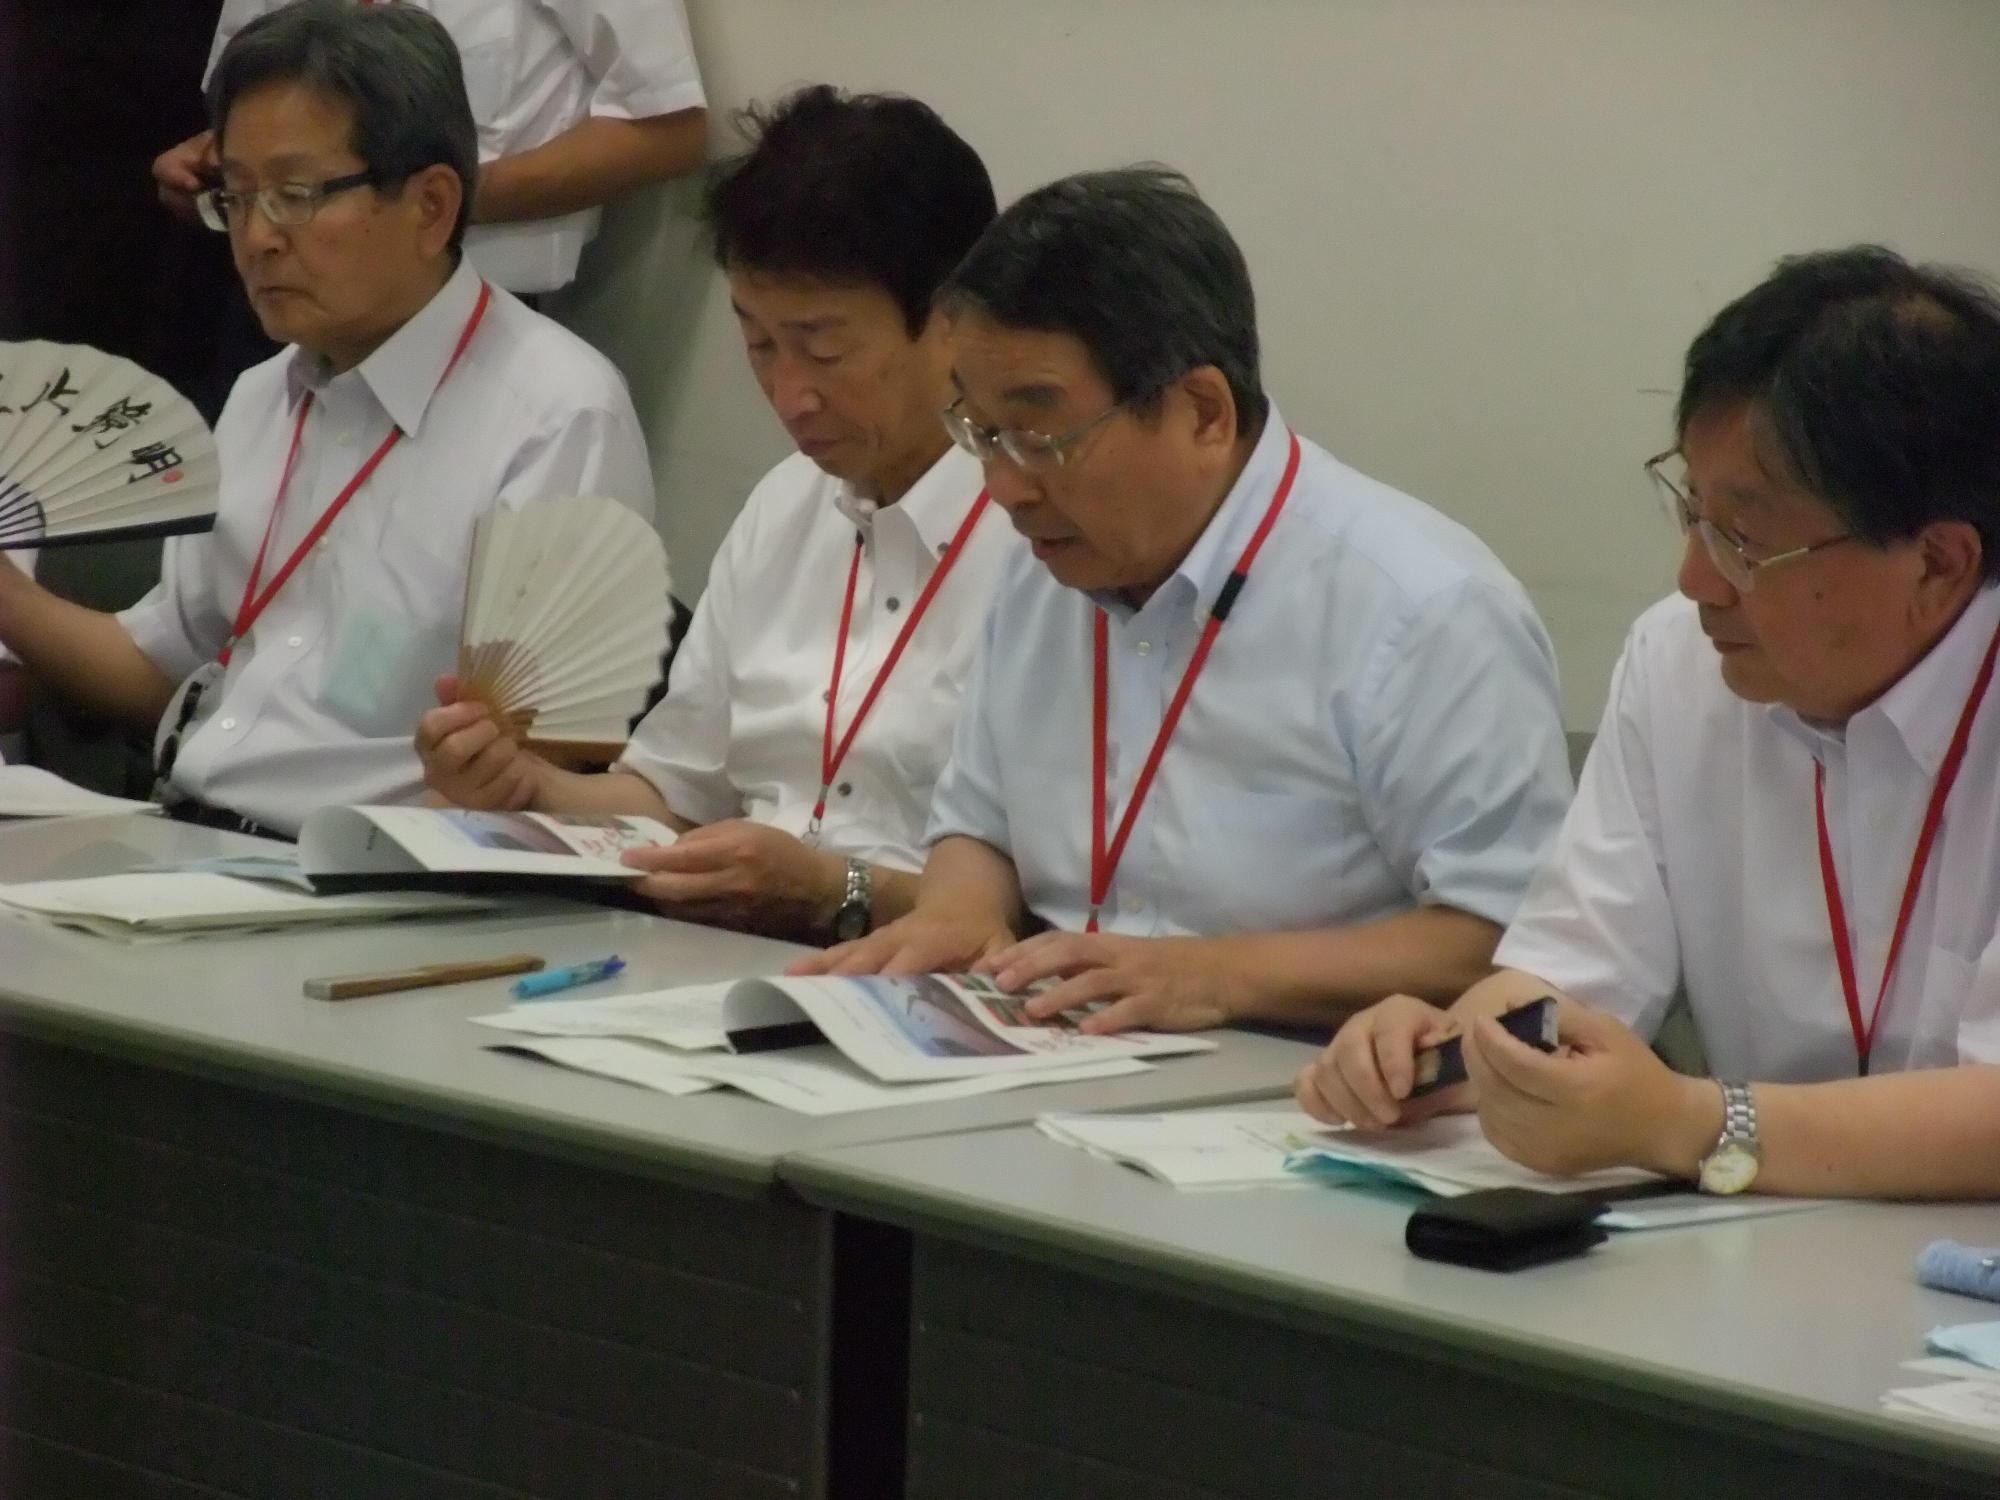 要望活動にて資料を確認する原田市長と出席者の方々の写真